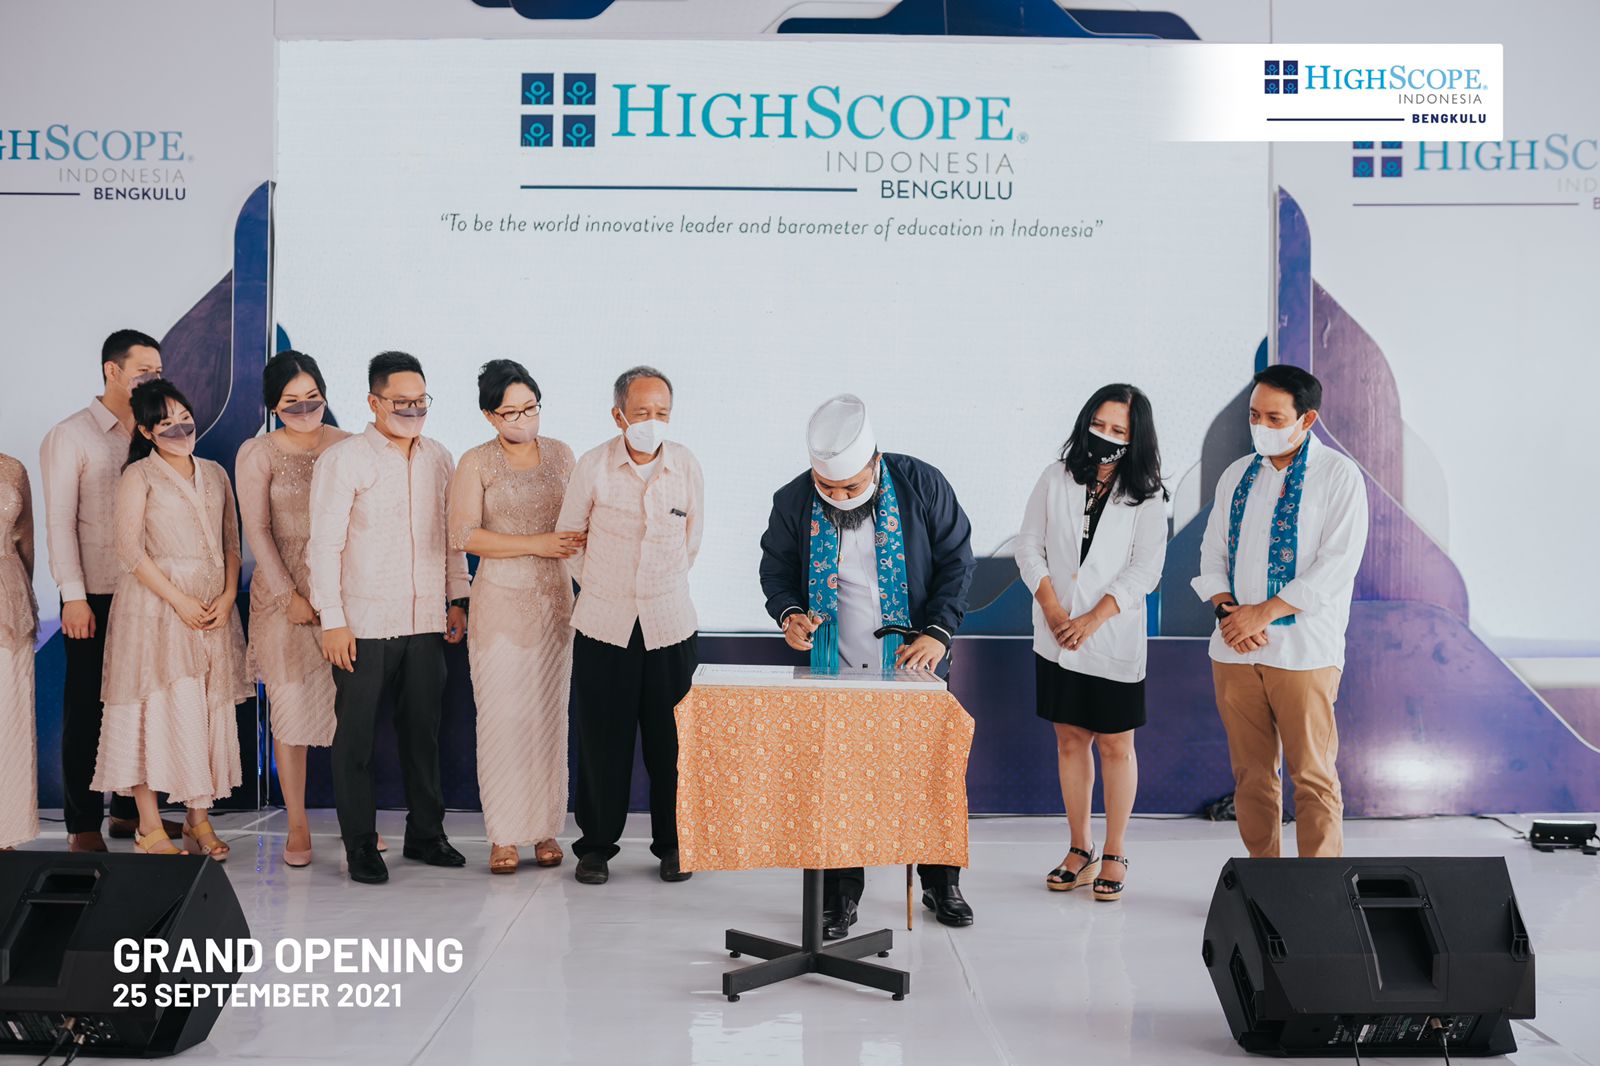 Sekolah HighScope Indonesia Bengkulu, Solusi Pendidikan Kekinian, Grand Opening Meriah